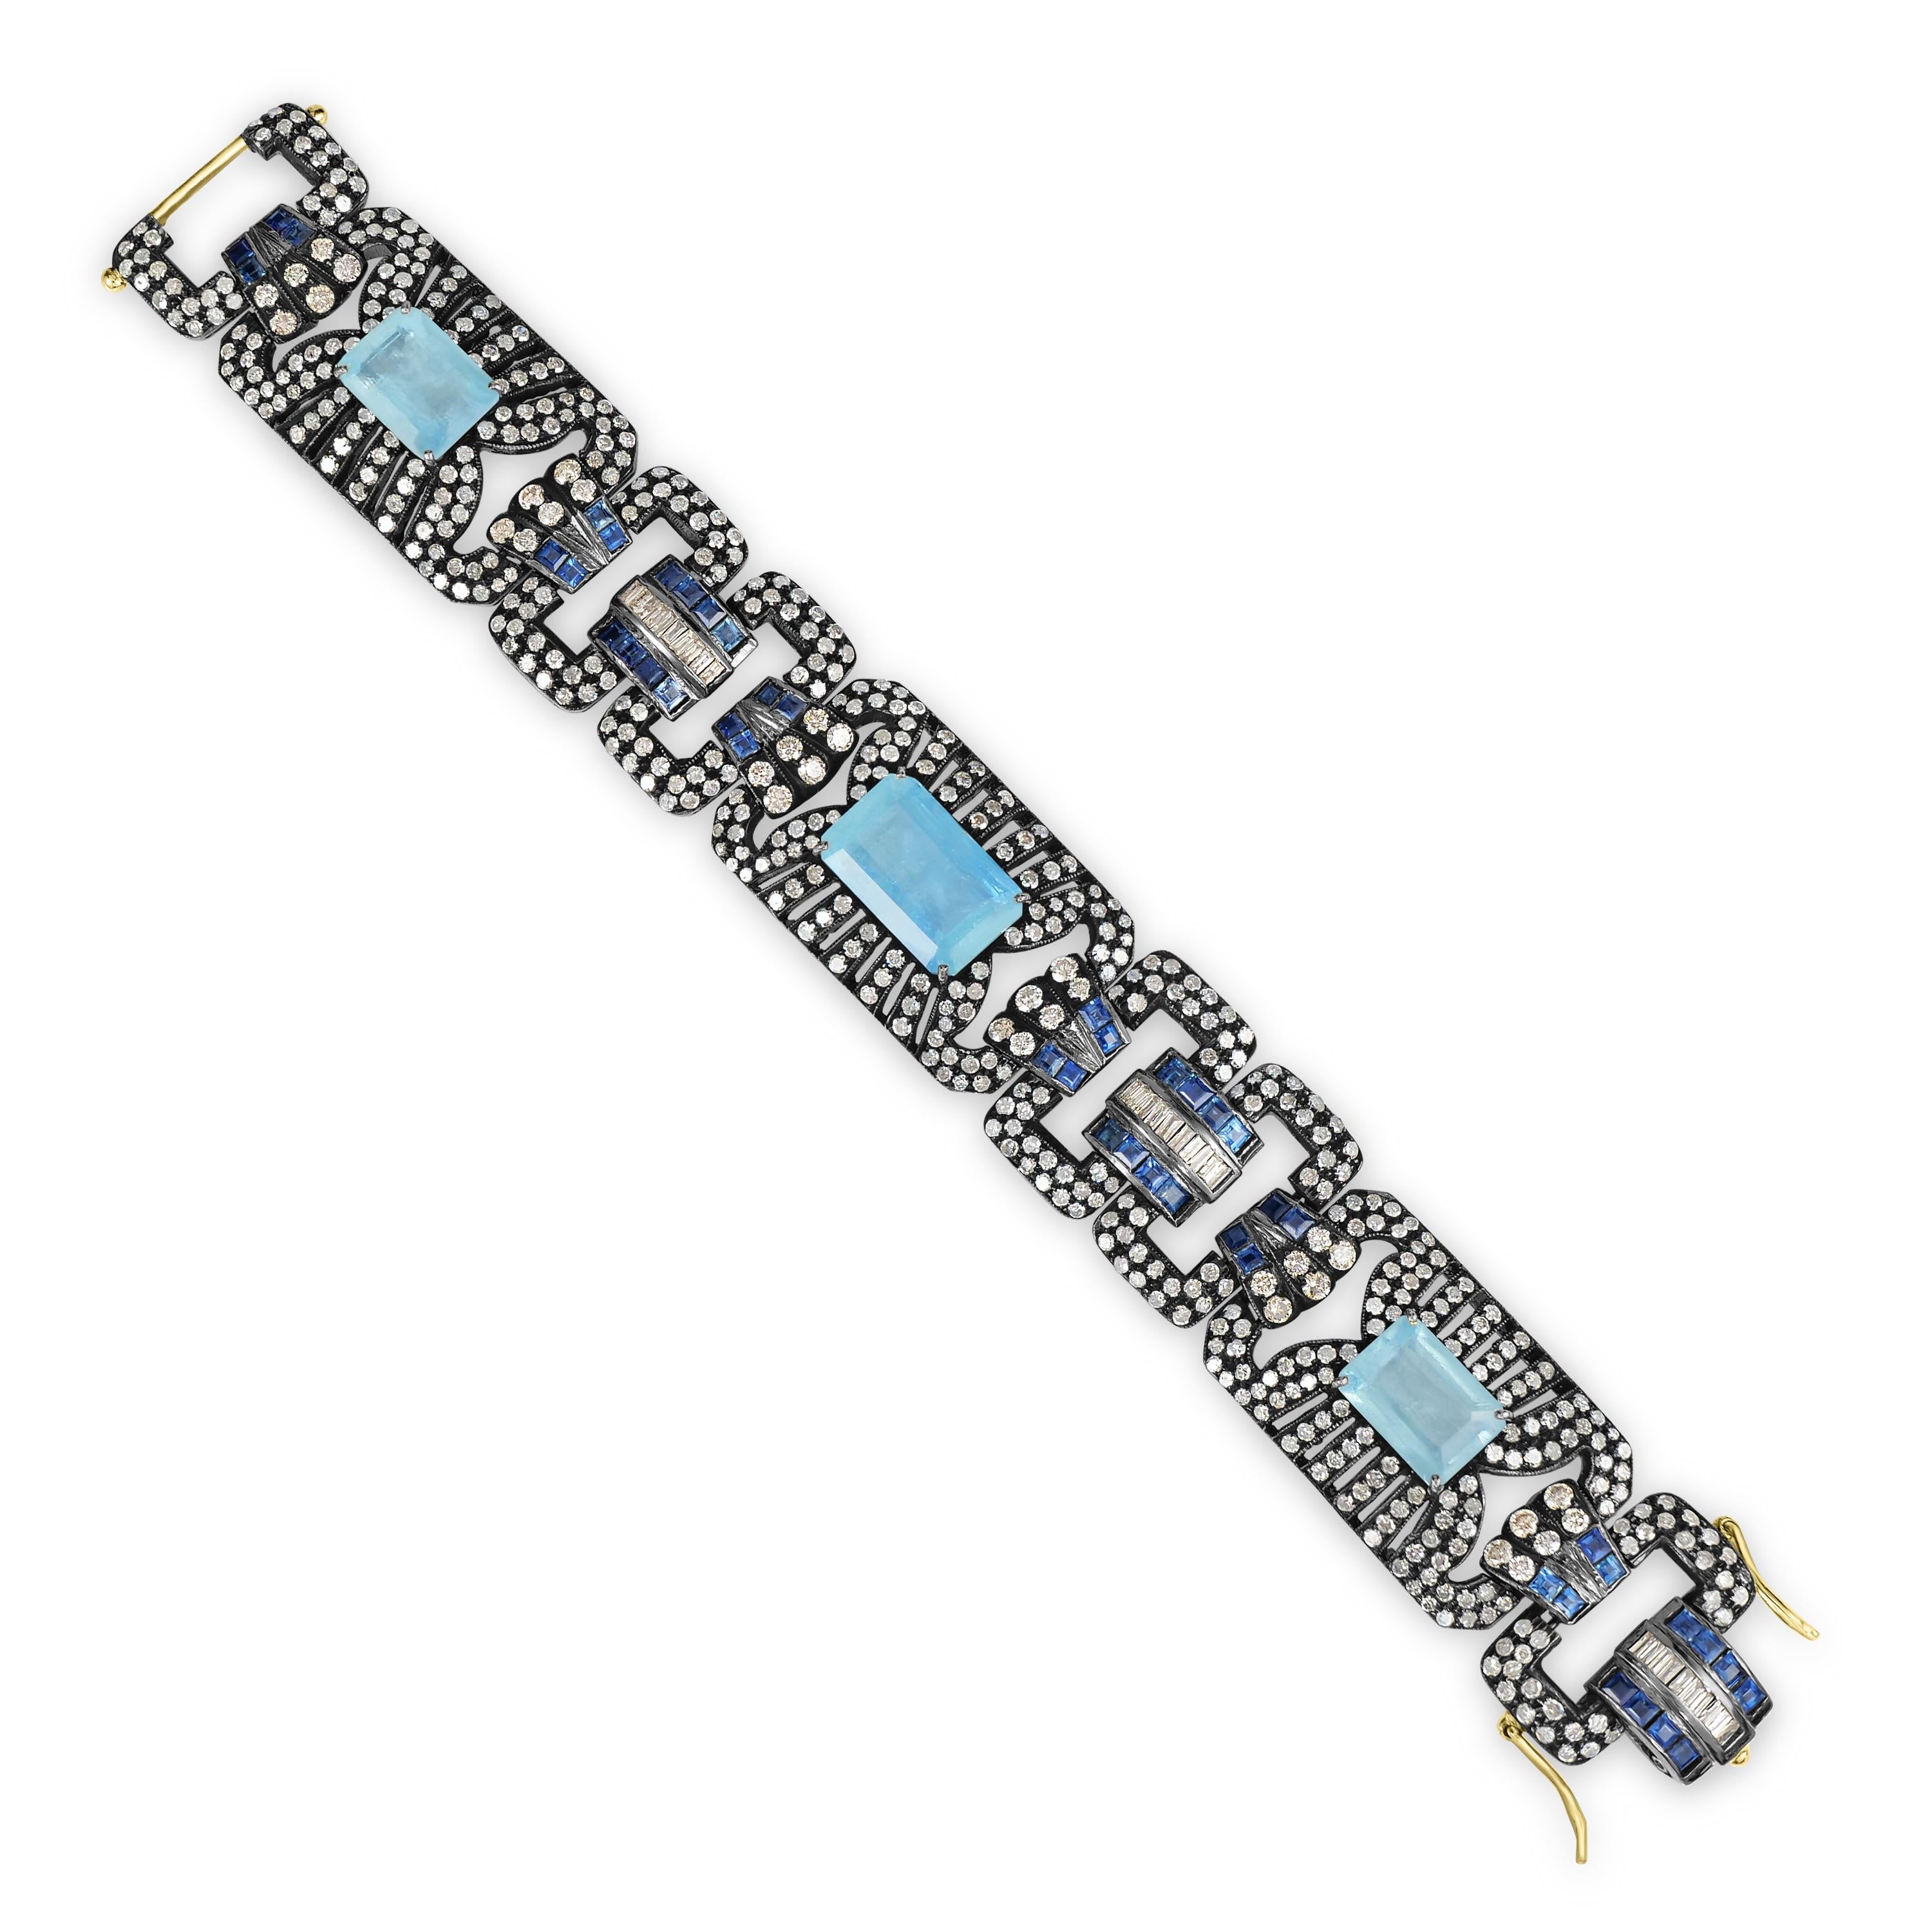 Wir präsentieren unseren atemberaubenden Victorian 27.5 Cttw. Aquamarin, blauer Saphir und Diamant Armband mit Scharnier, ein wahres Meisterwerk der viktorianischen Eleganz und Handwerkskunst.

Dieses exquisite, mit viel Liebe zum Detail gefertigte